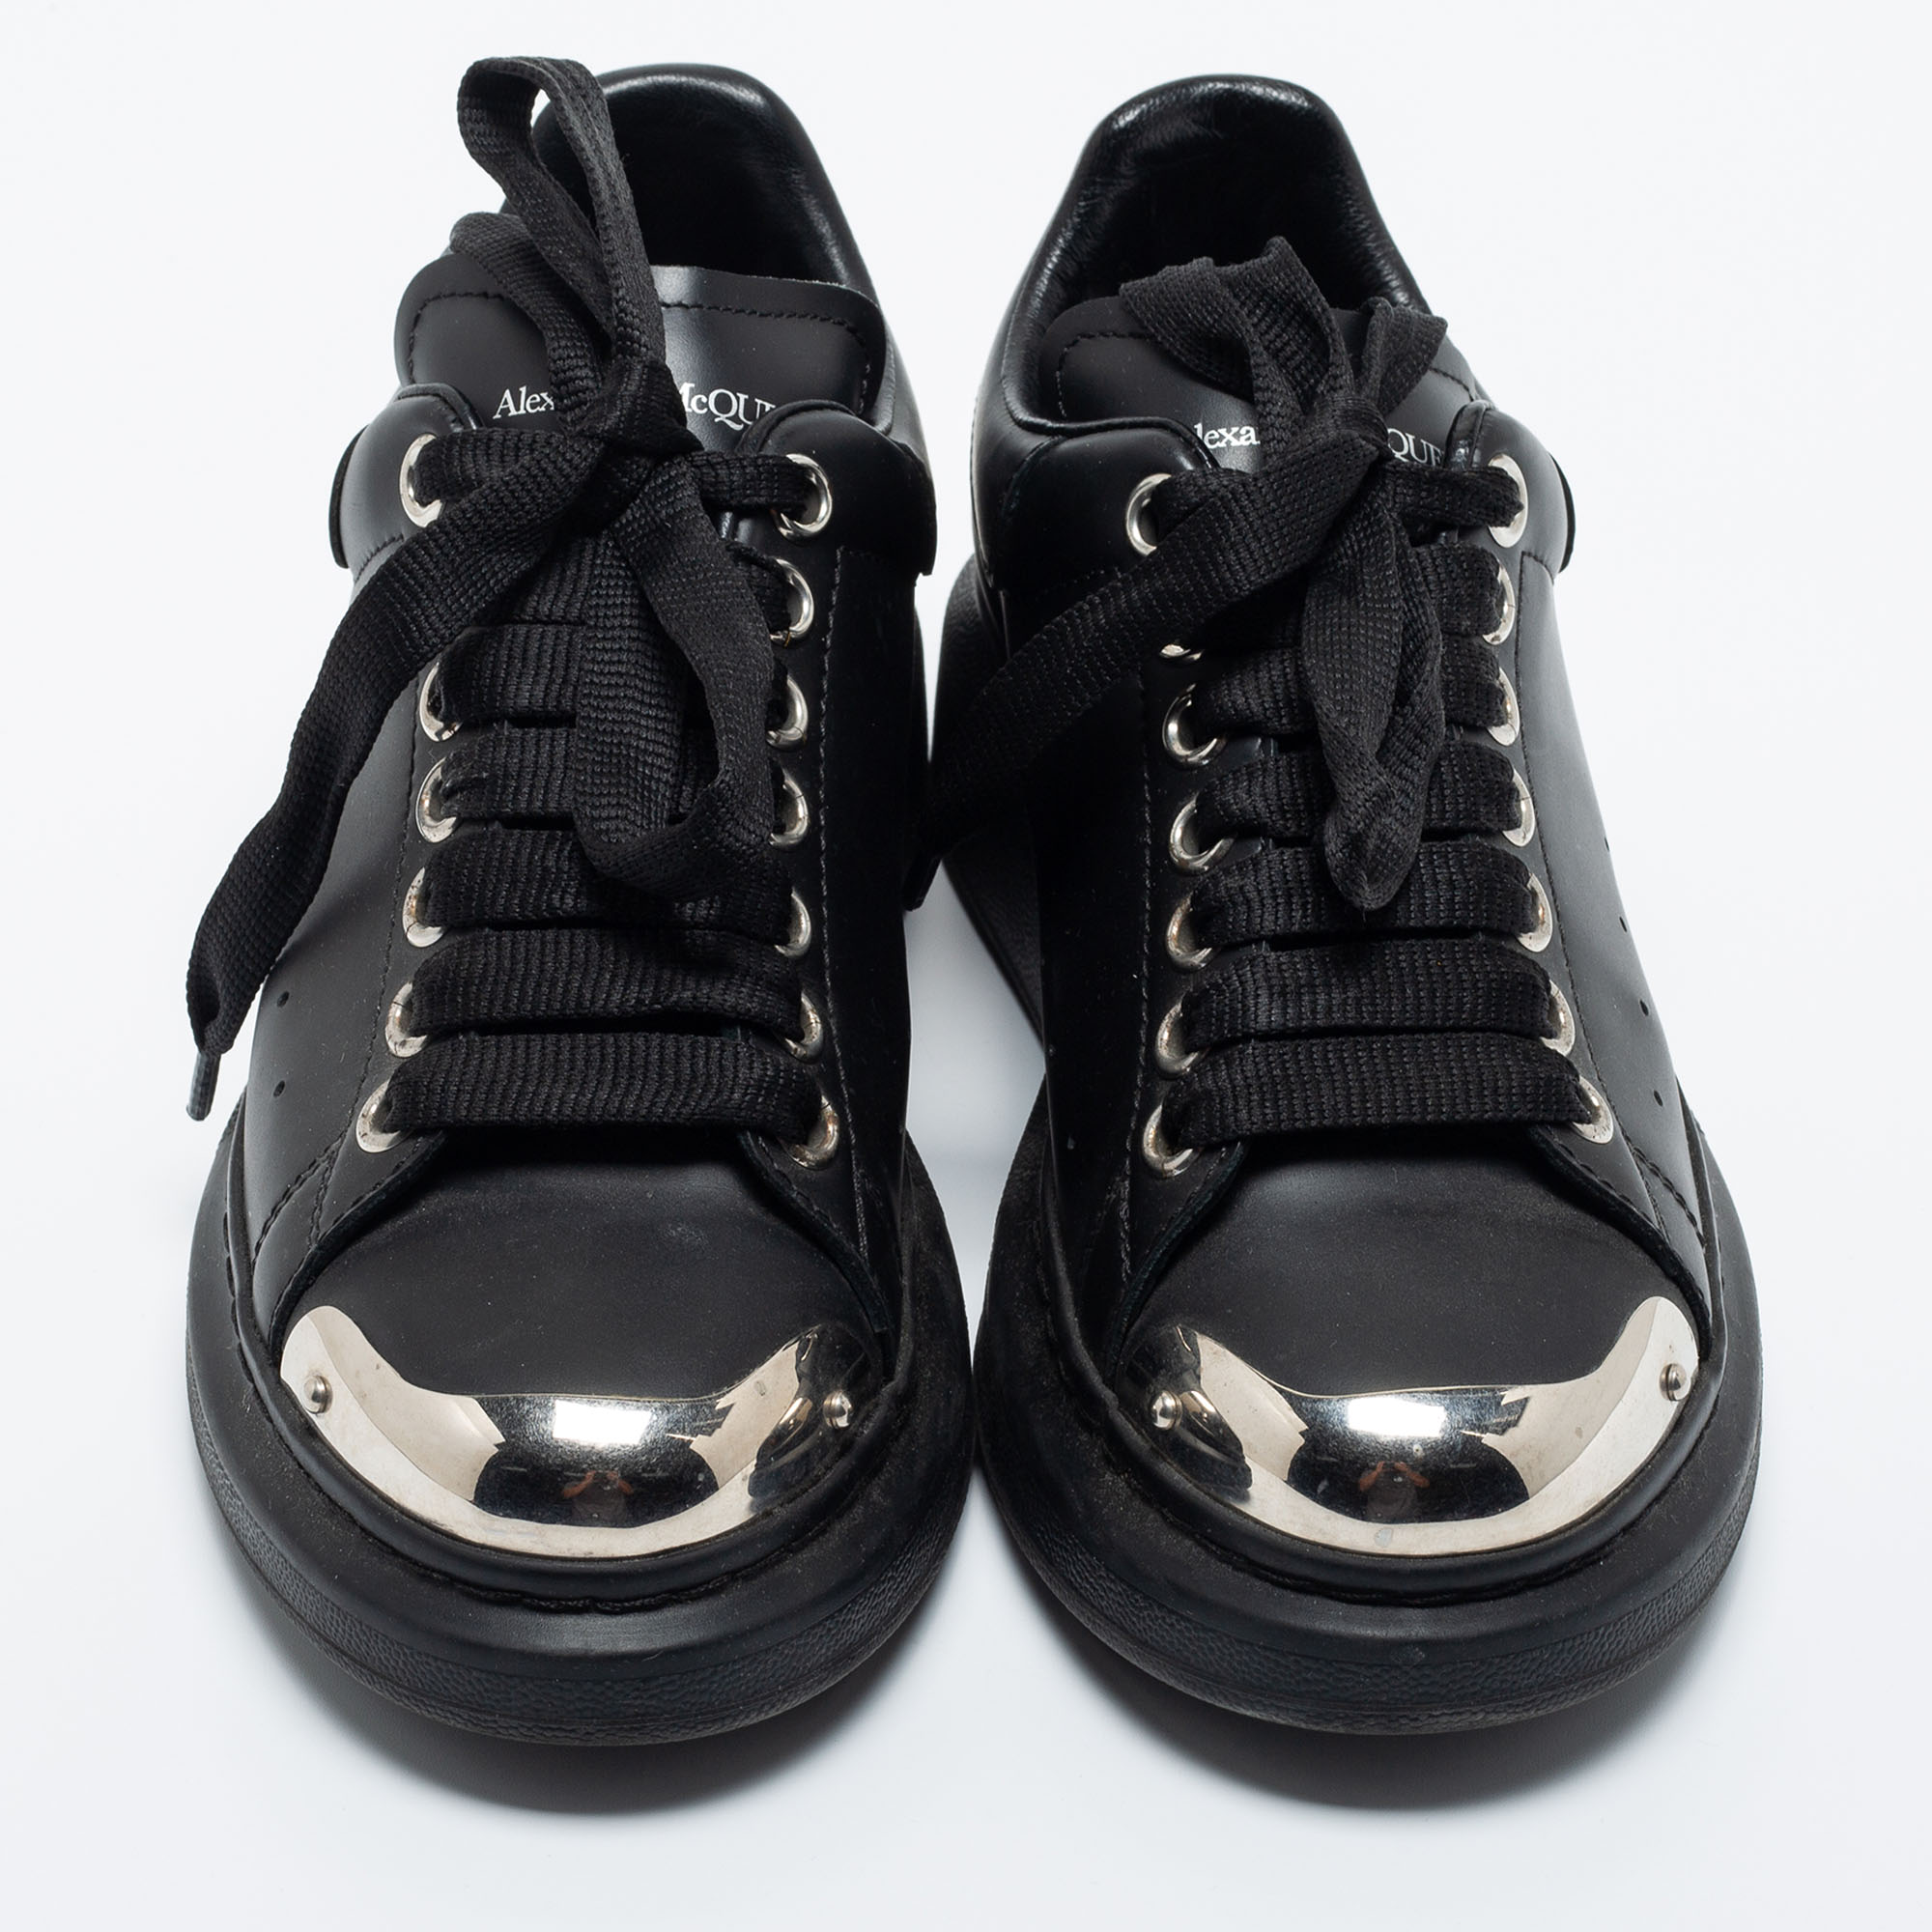 Alexander McQueen Releases Heart Larry Sneakers